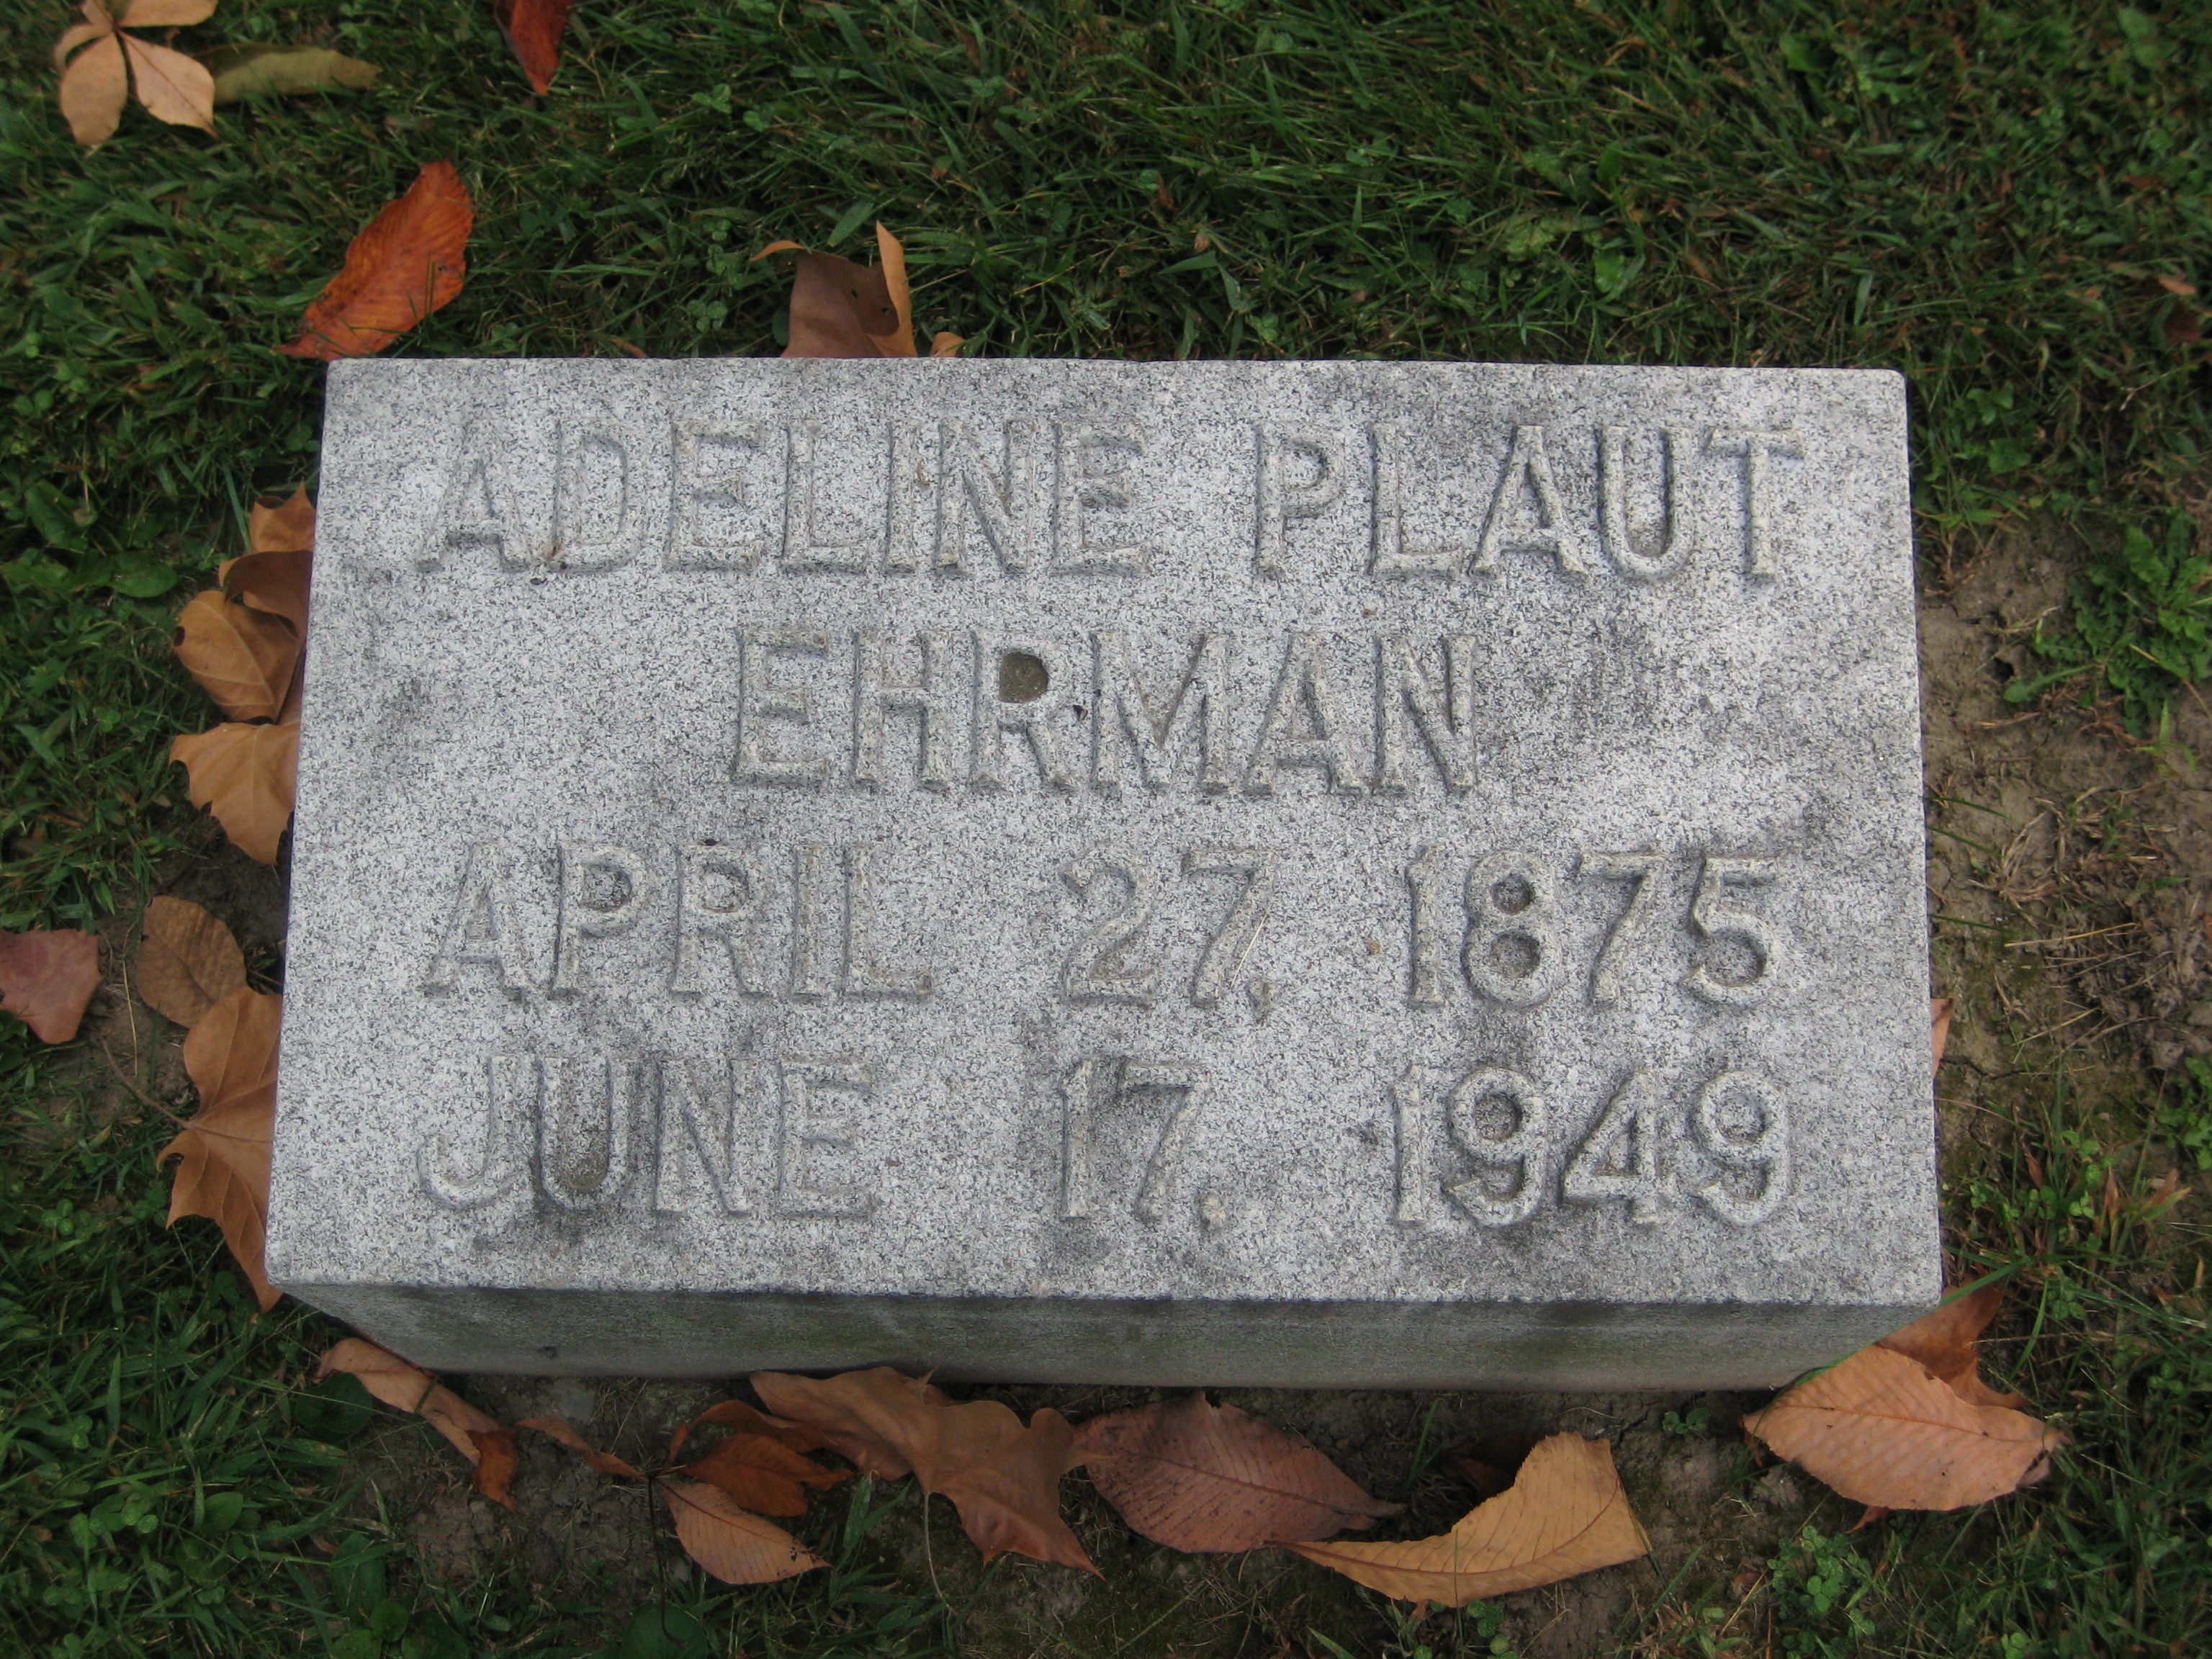 Ehrman Plaut, Adeline